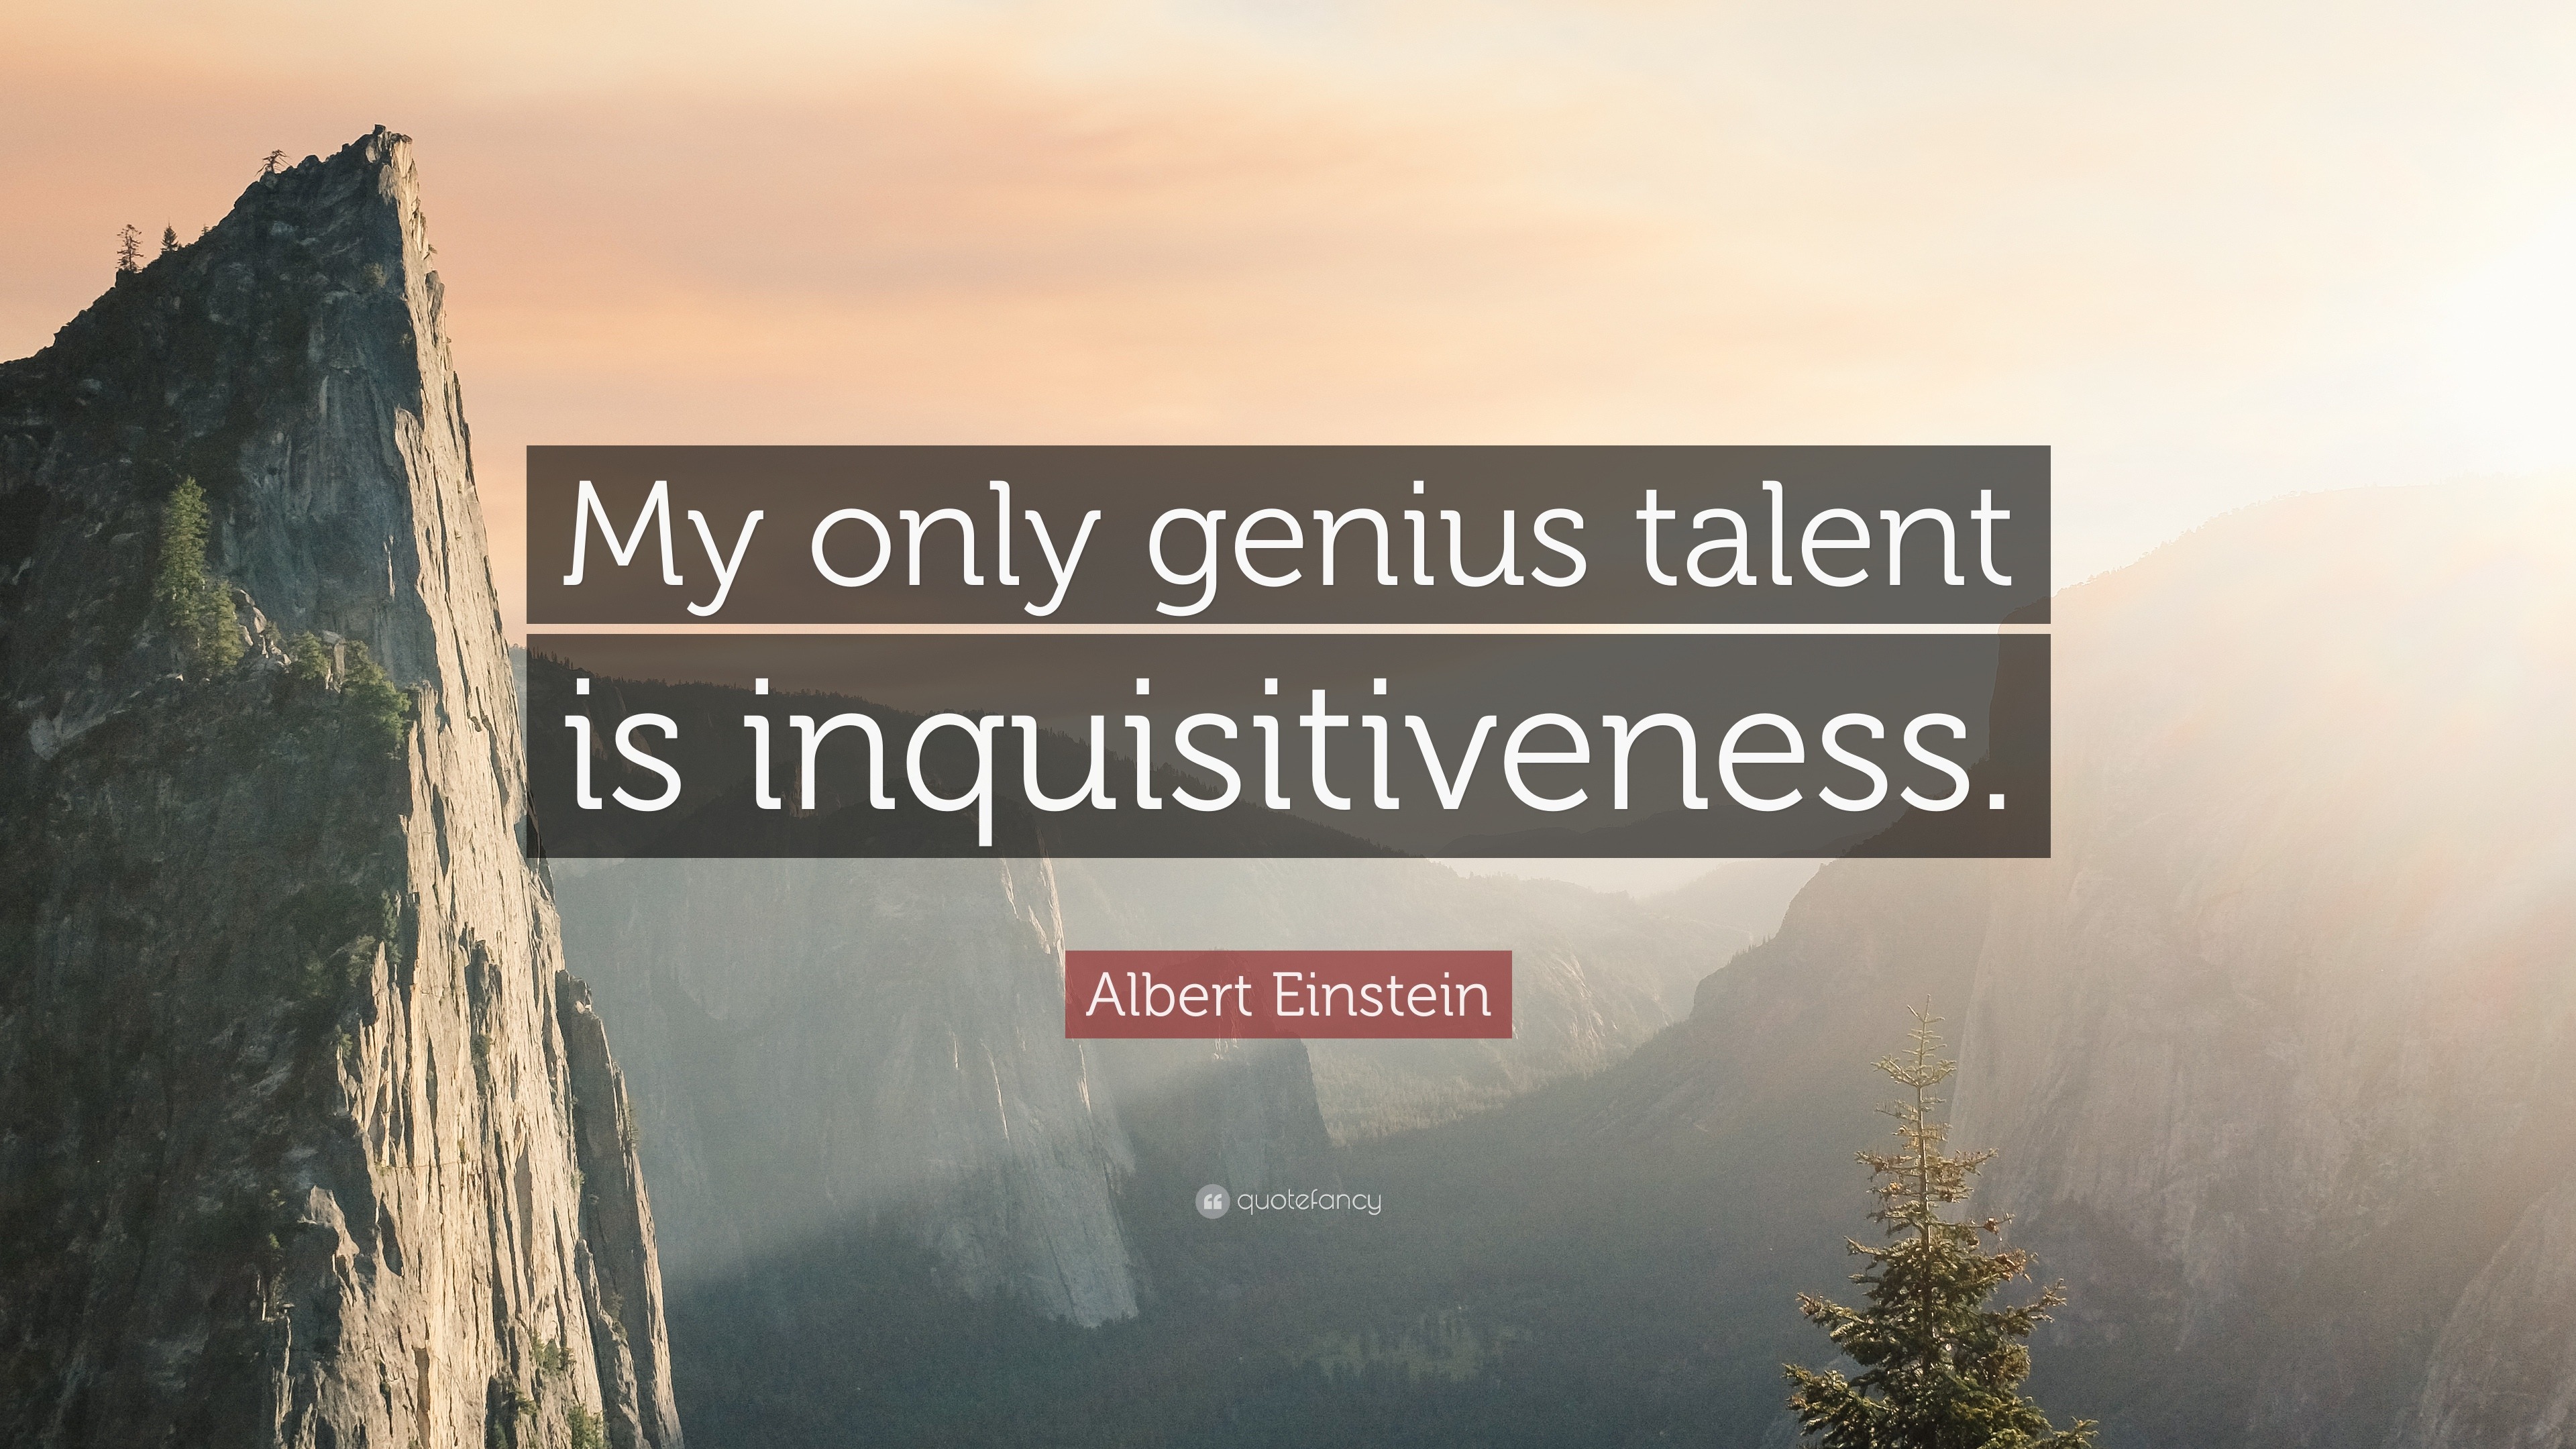 Albert Einstein Quote: “My only genius talent is inquisitiveness.”